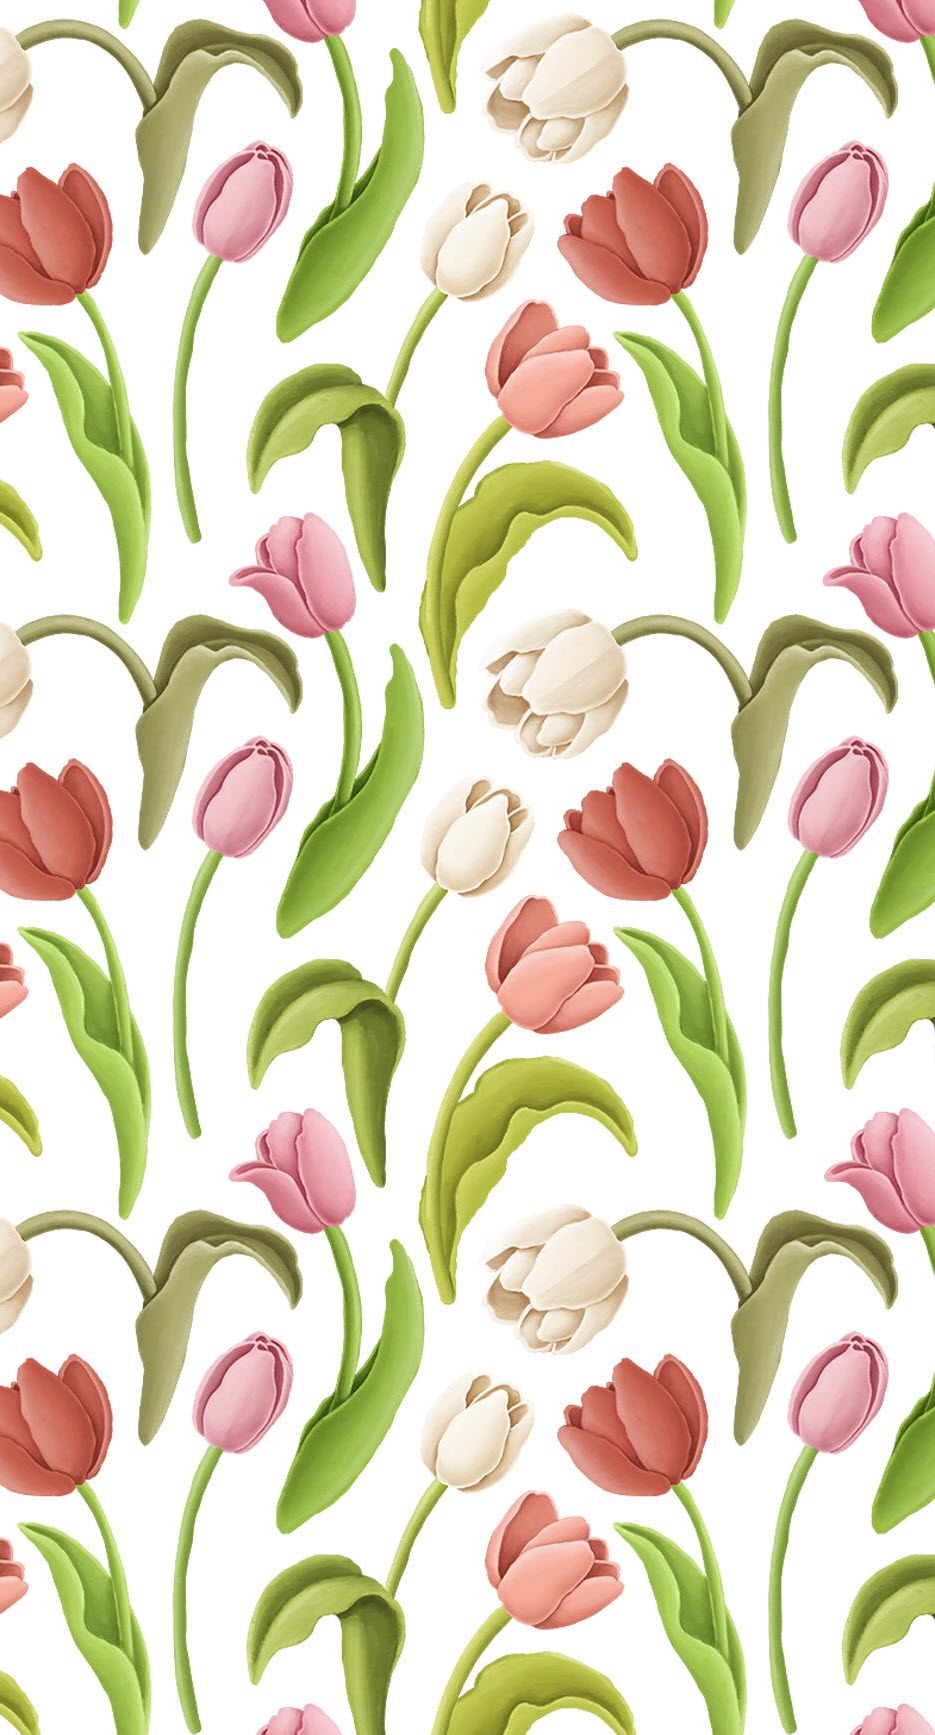 Hình nền hoa tulip đẹp nhất cho điện thoại